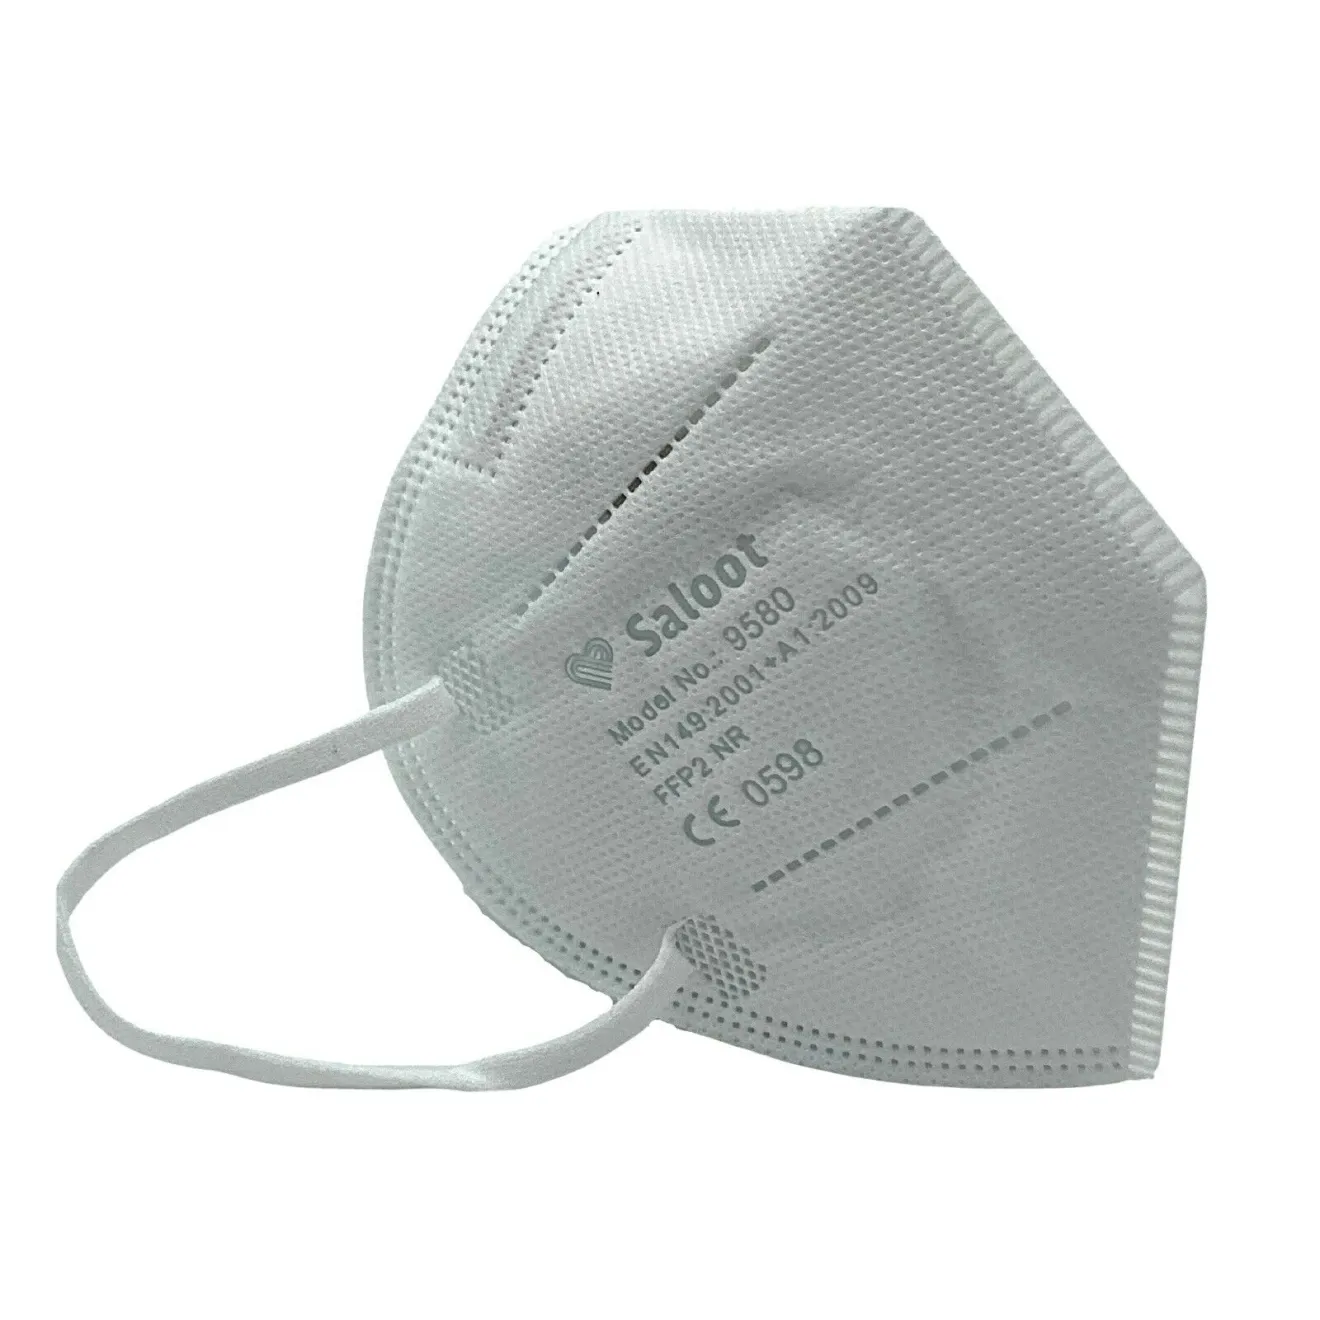 Kleine Atemschutzmaske 4-lagig FFP2 einzeln gepackt 1 ST